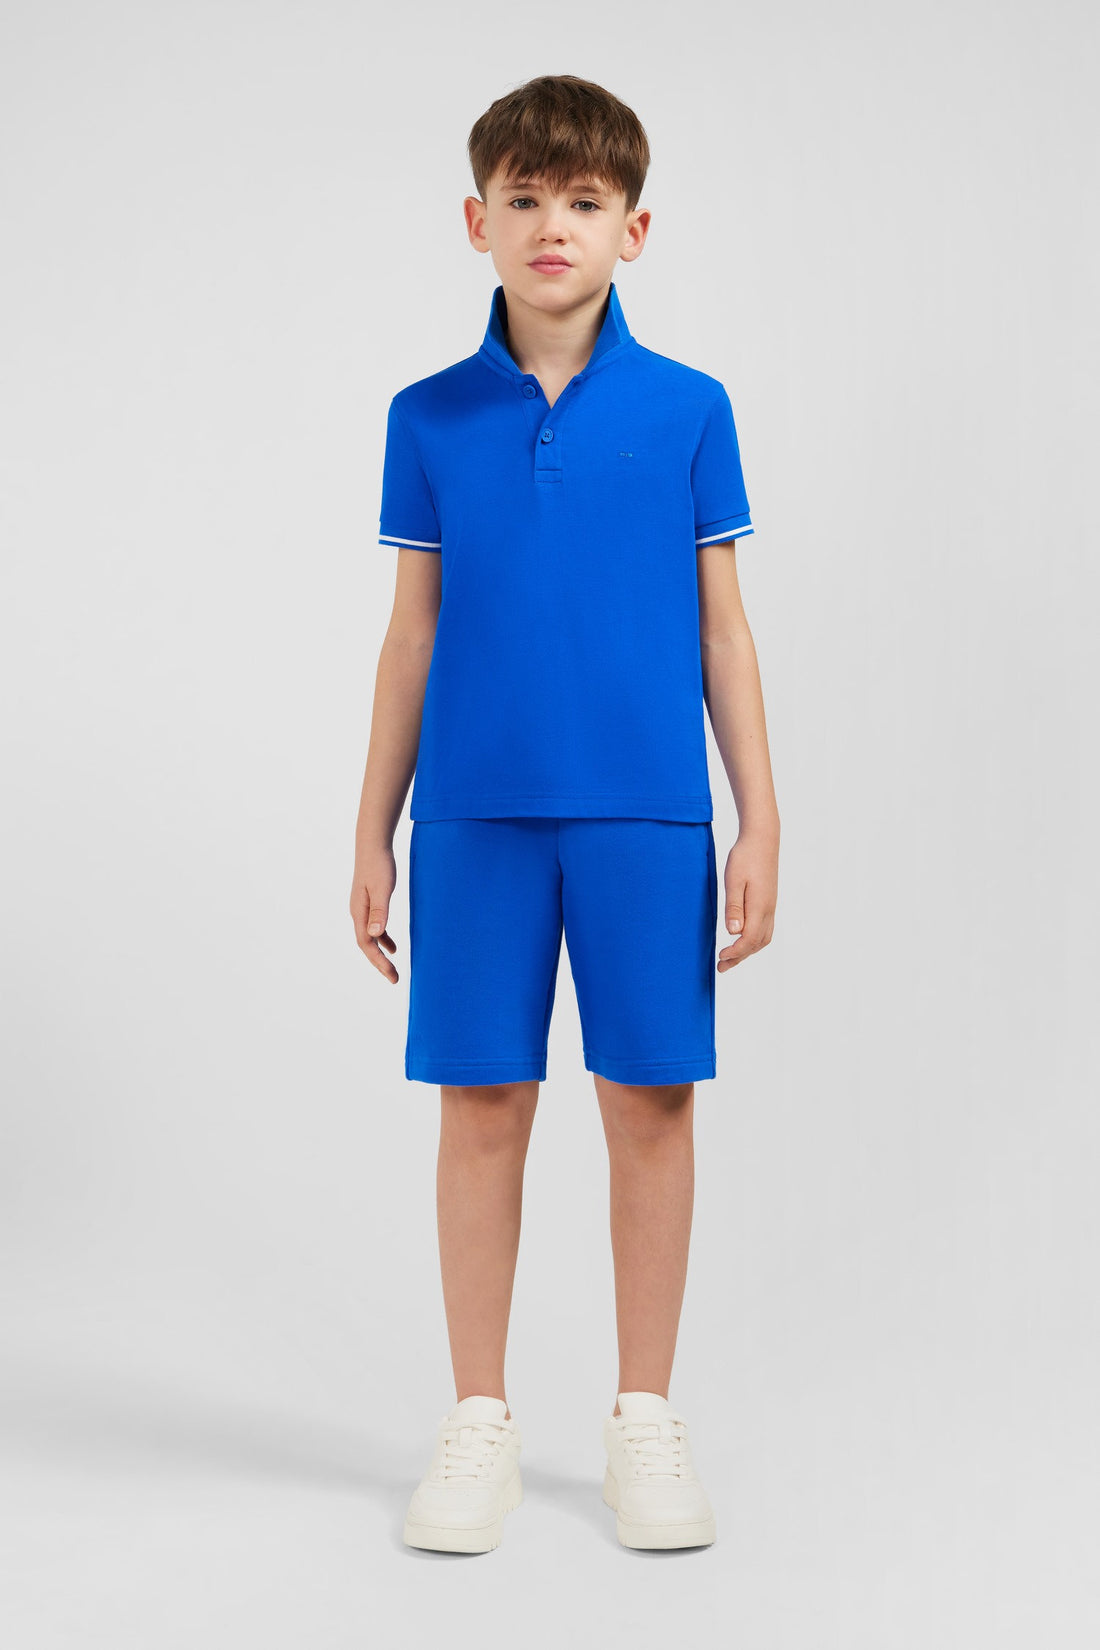 Blue Short-Sleeved Polo Shirt In PiquŽ Cotton_E24MAIPC0040_BLV10_01